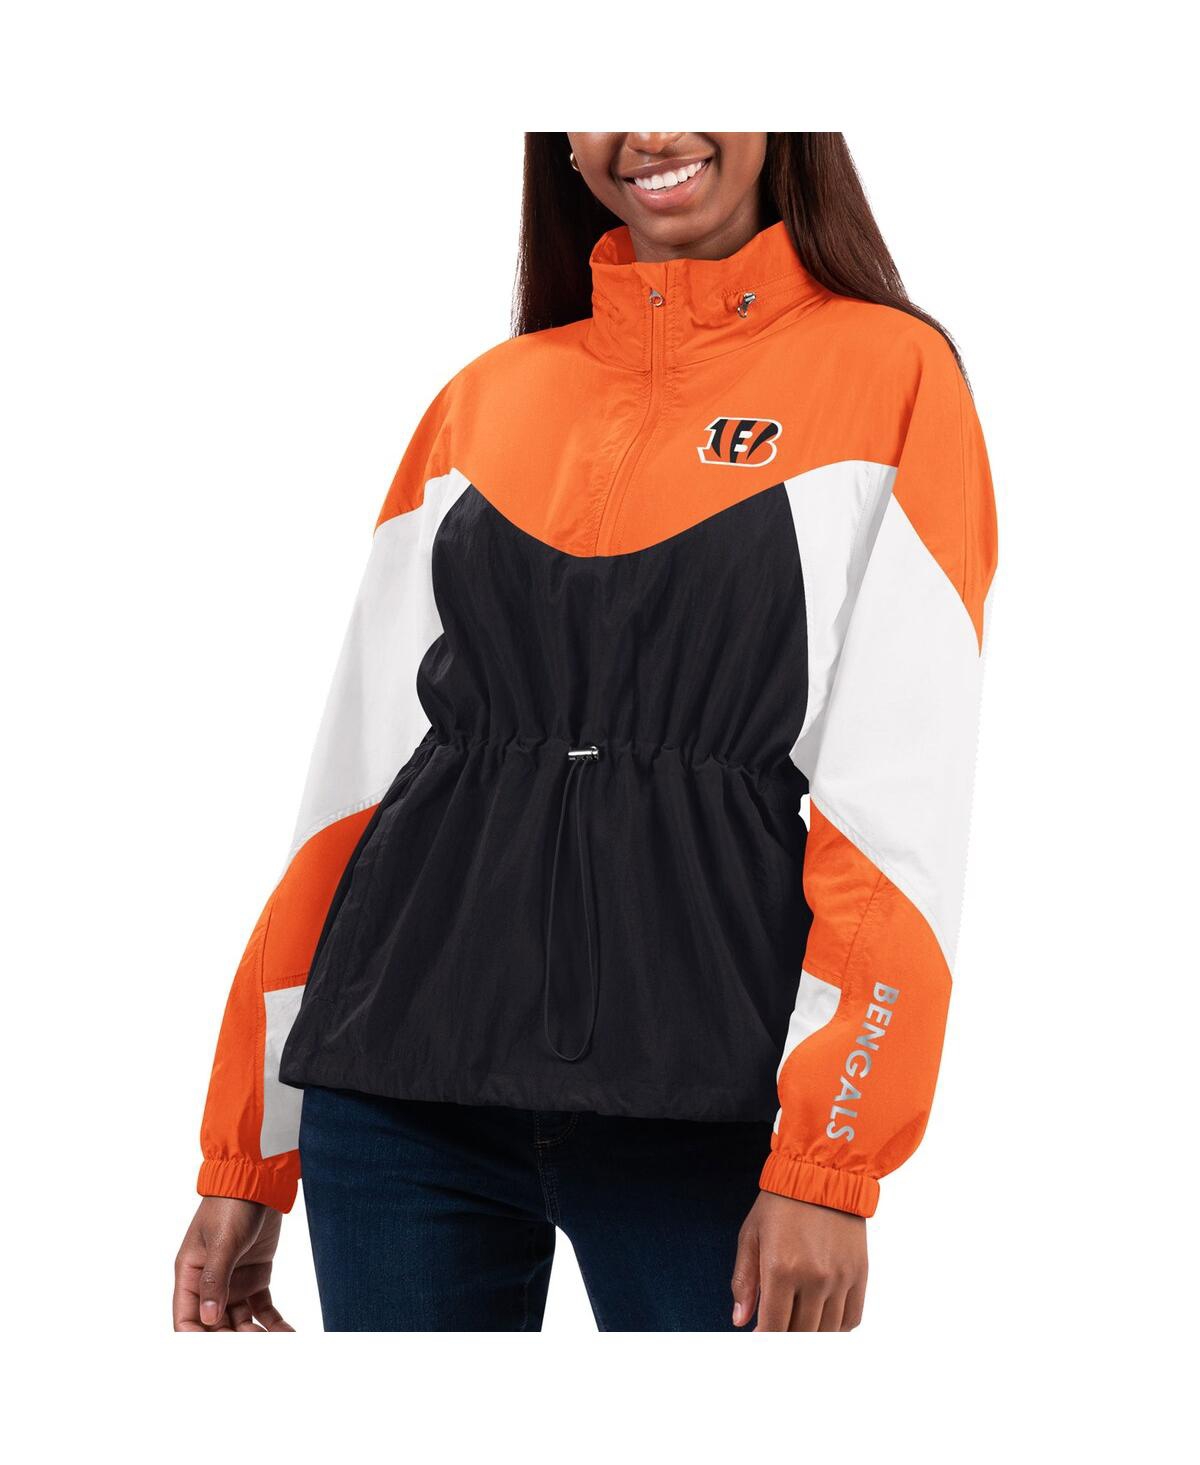 G-iii 4her By Carl Banks Women's  Black, Orange Cincinnati Bengals Tie Breaker Lightweight Quarter-zi In Black,orange